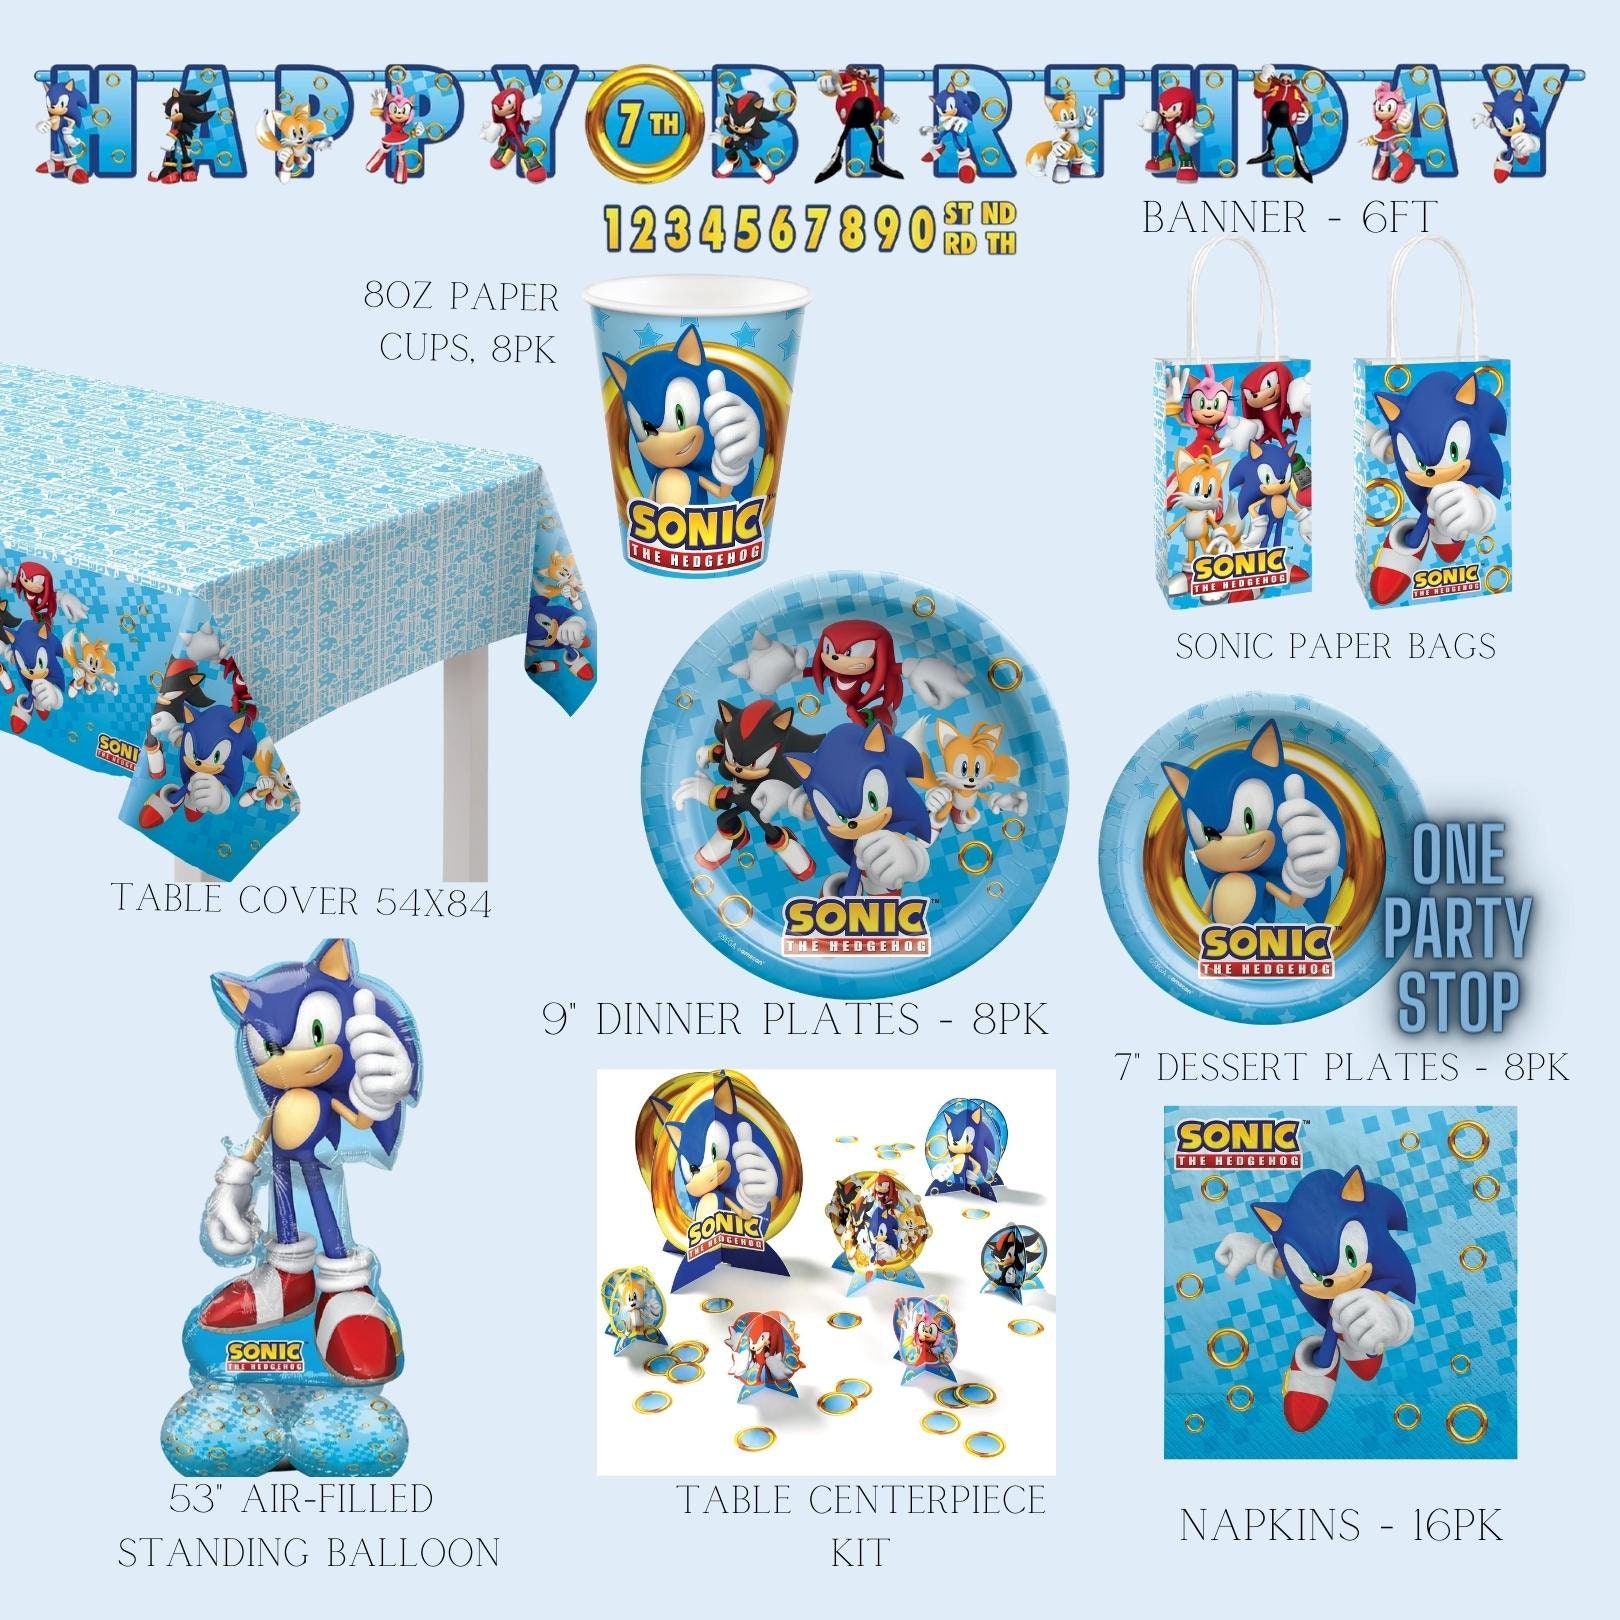 V cards on Instagram: Cumpleaños Sonic 🎁🎈 Incluye: 🎈Backdrop  personalizado 🎈Set de globos con colores a tu elección 🎈Cilindros para  pastel 🎈Número en madera 🎈Complementos decorativos 🎈Cupcakes Vcards te  acompaña en tus